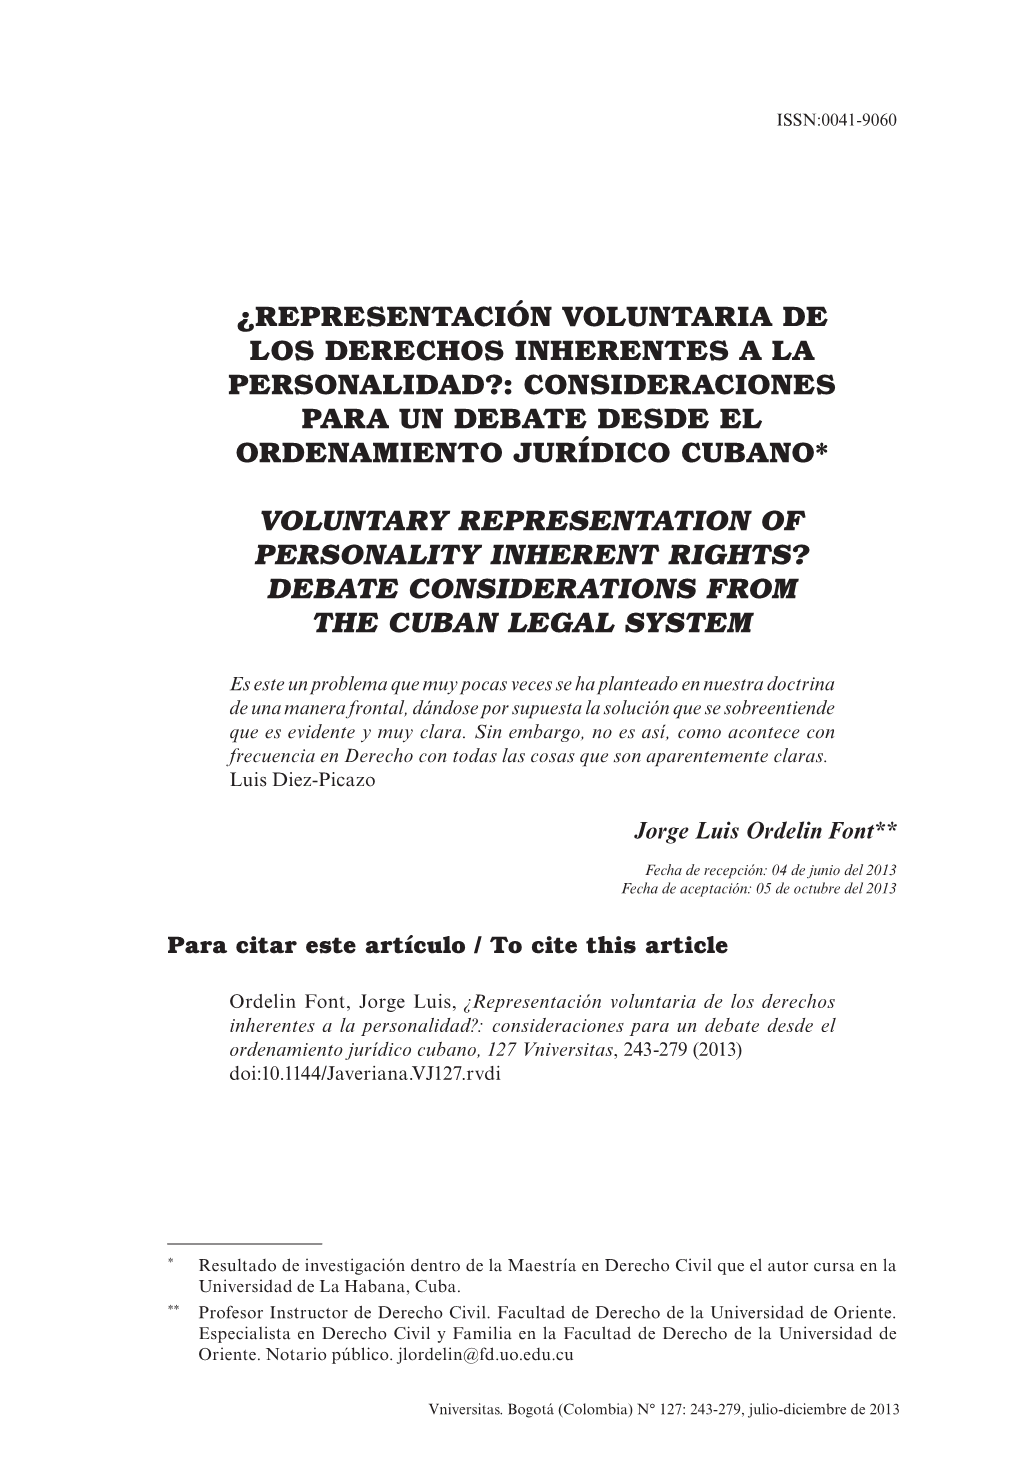 ¿Representación Voluntaria De Los Derechos Inherentes a La Personalidad?: Consideraciones Para Un Debate Desde El Ordenamiento Jurídico Cubano*